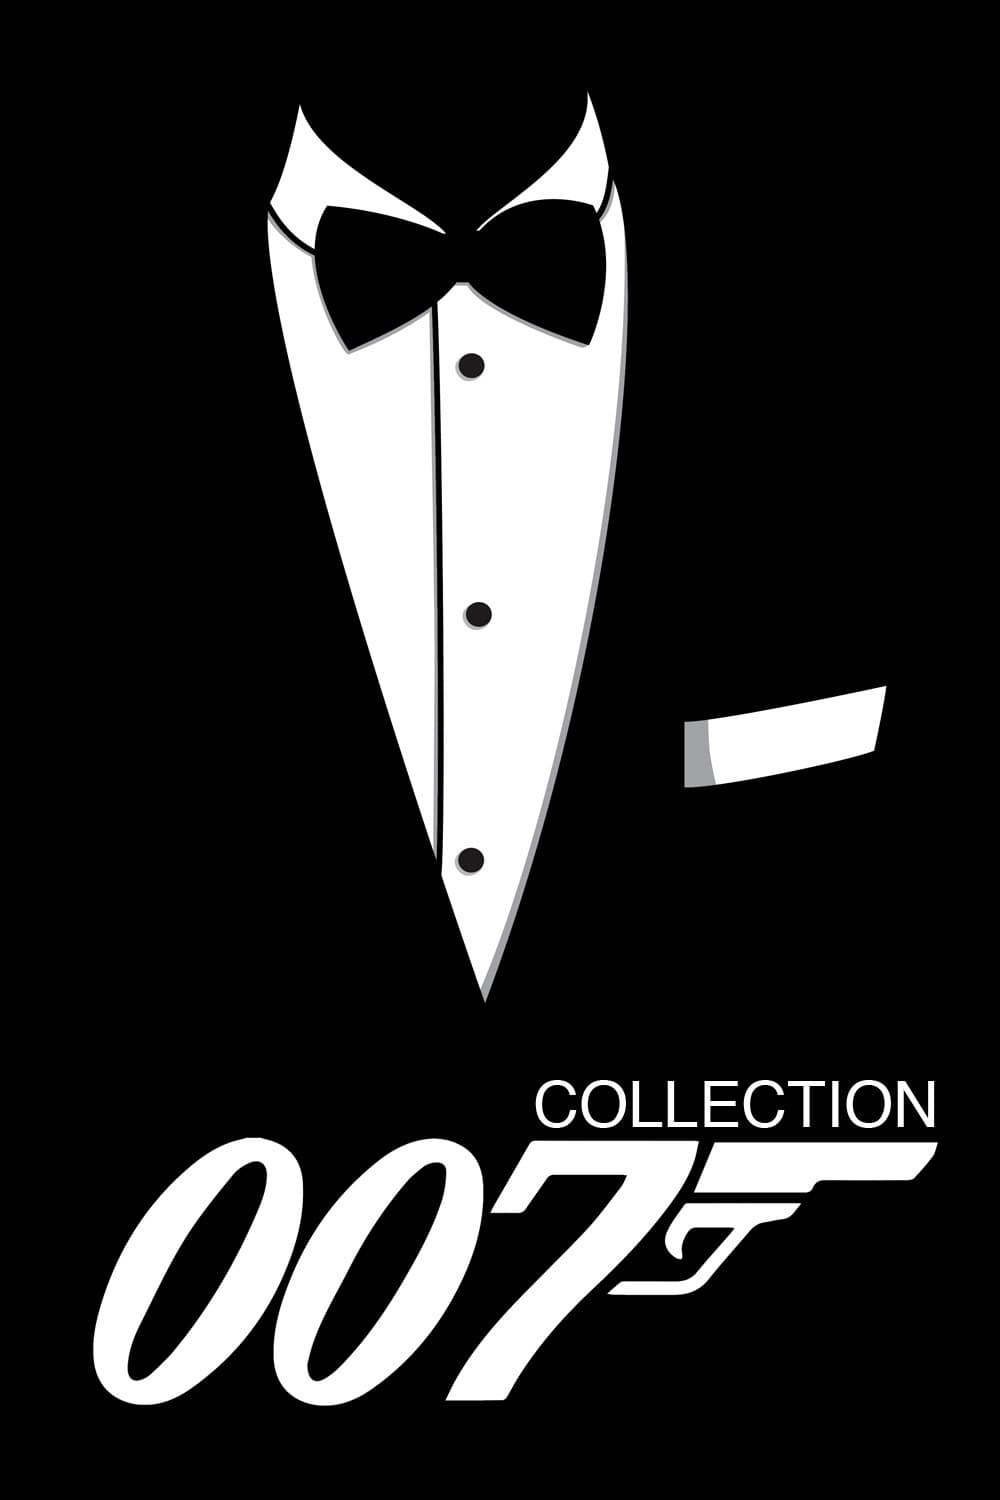 Fiche et filmographie de James Bond Collection